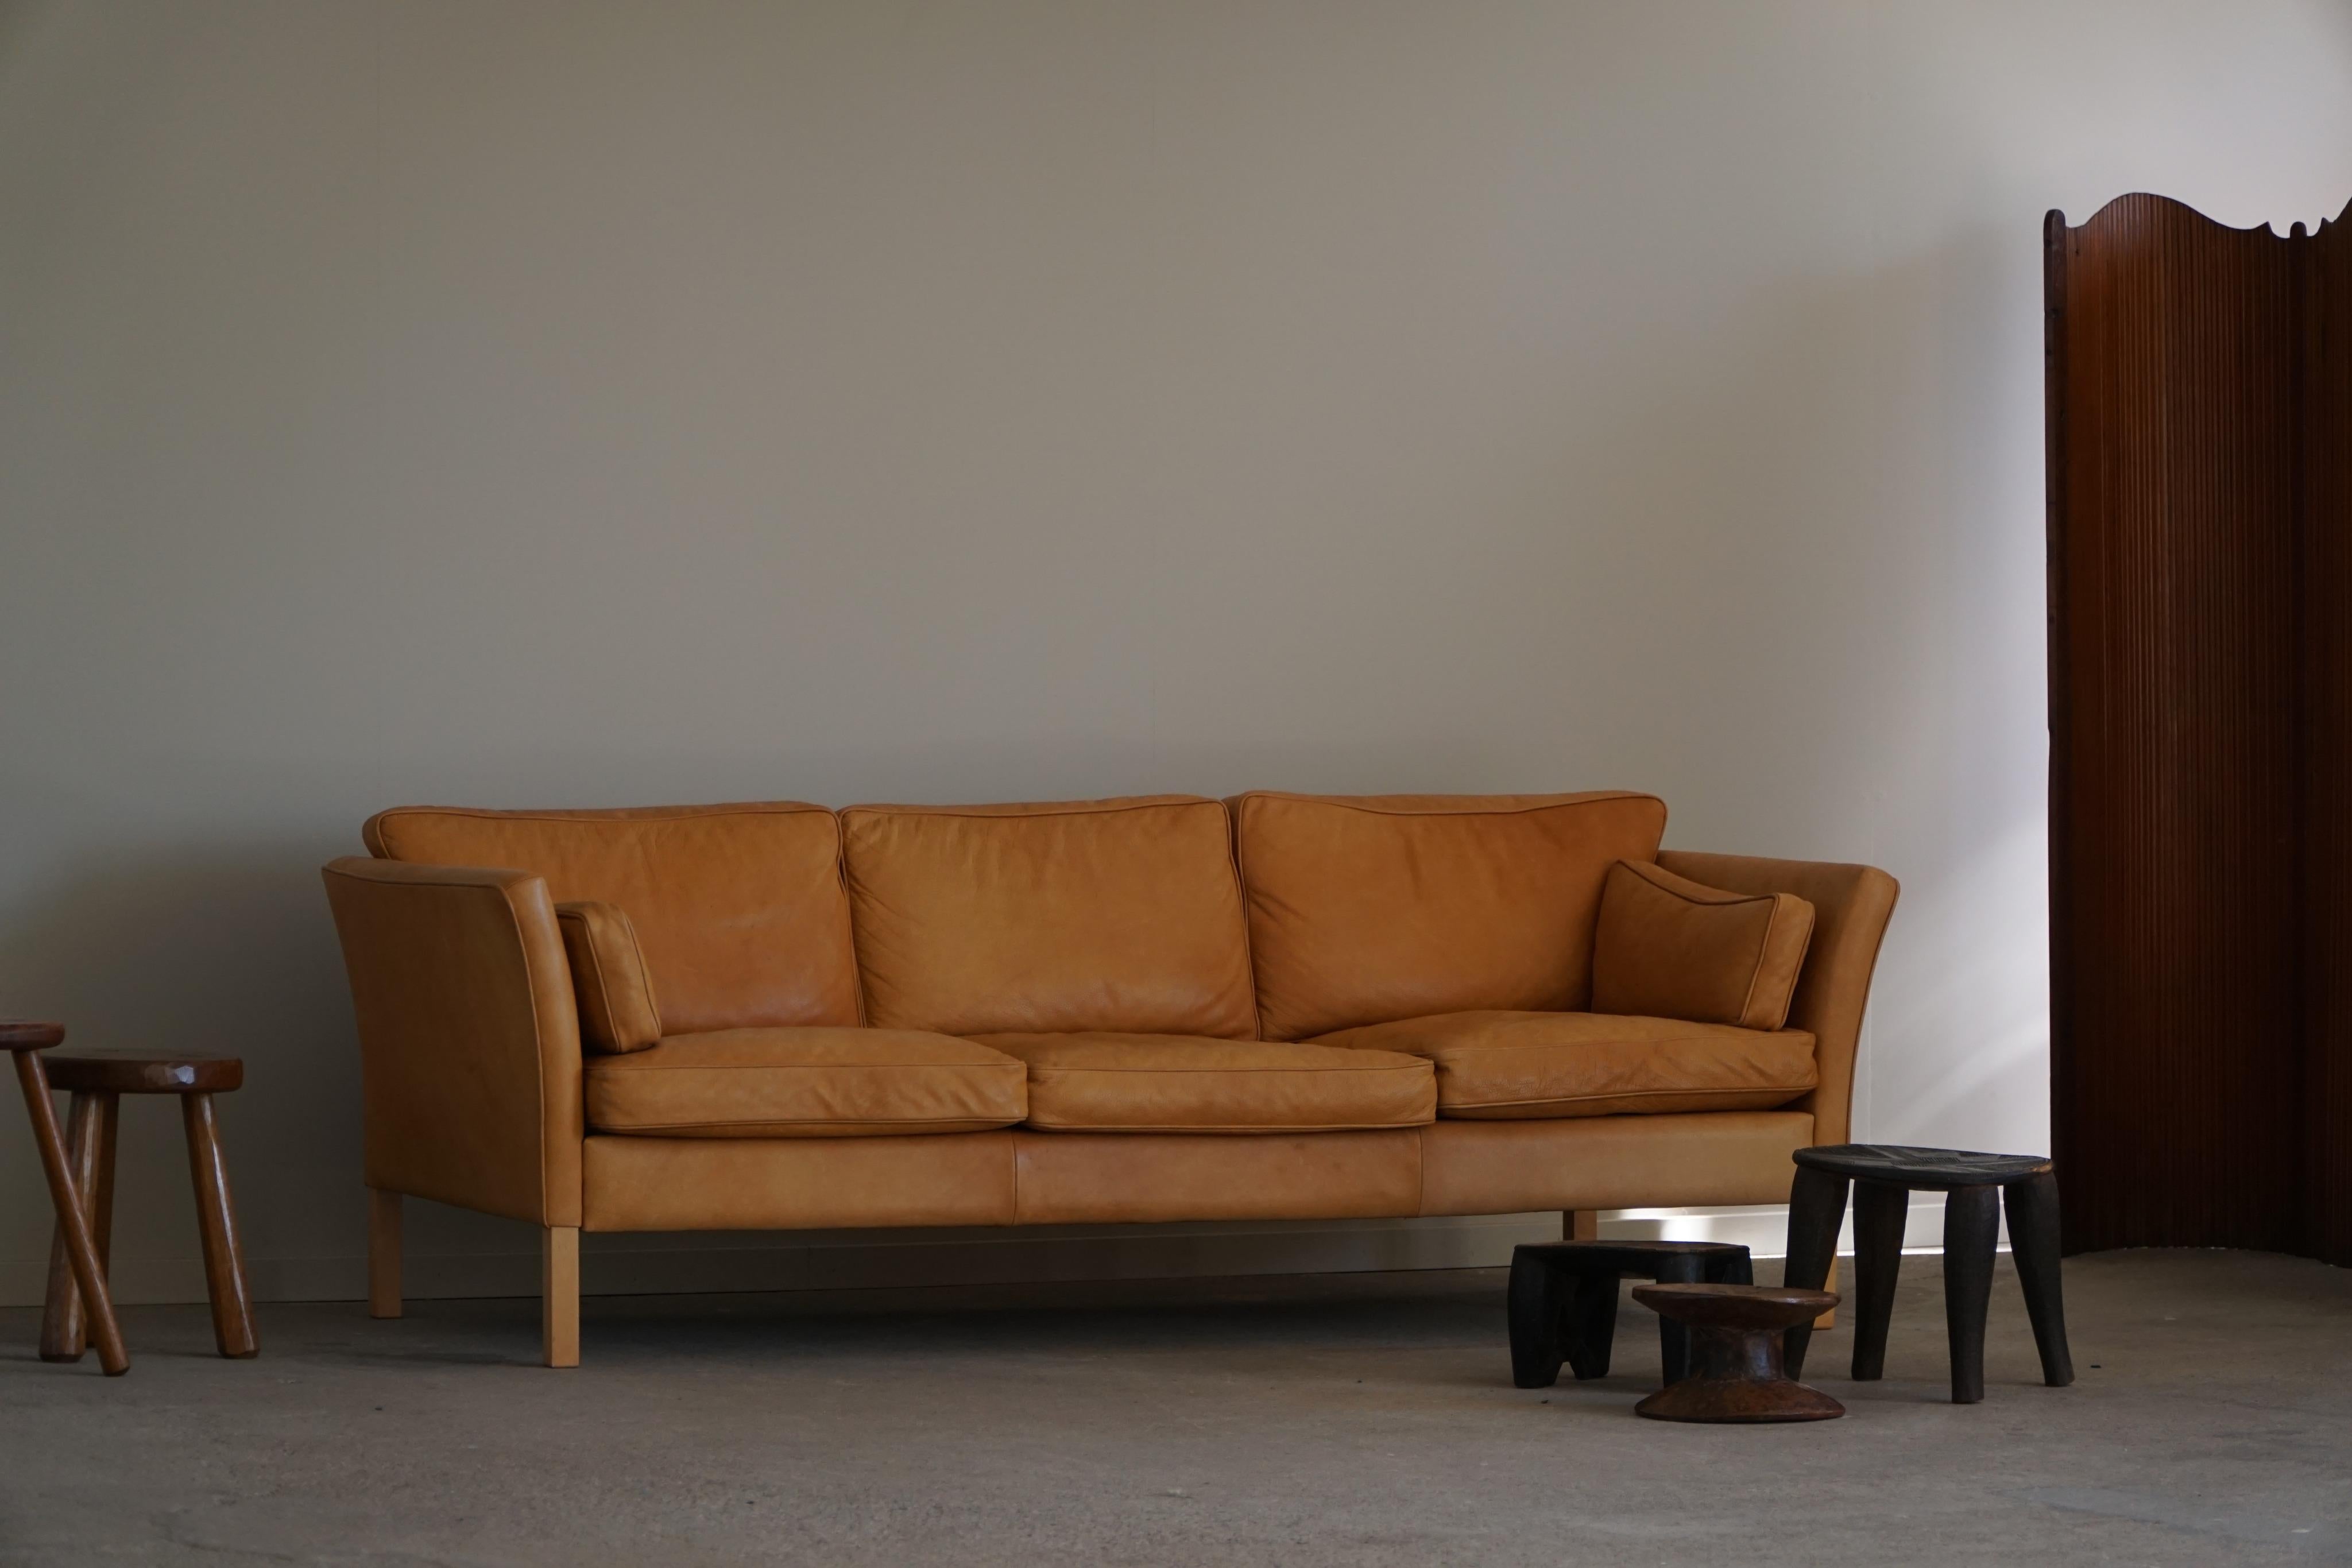 Un très beau canapé trois places classique de style moderne danois, fabriqué par Stouby au Danemark. Le canapé est revêtu d'un cuir brun cognac de haute qualité, dont la patine riche et chaude lui confère un aspect vintage et luxueux. Les pieds sont